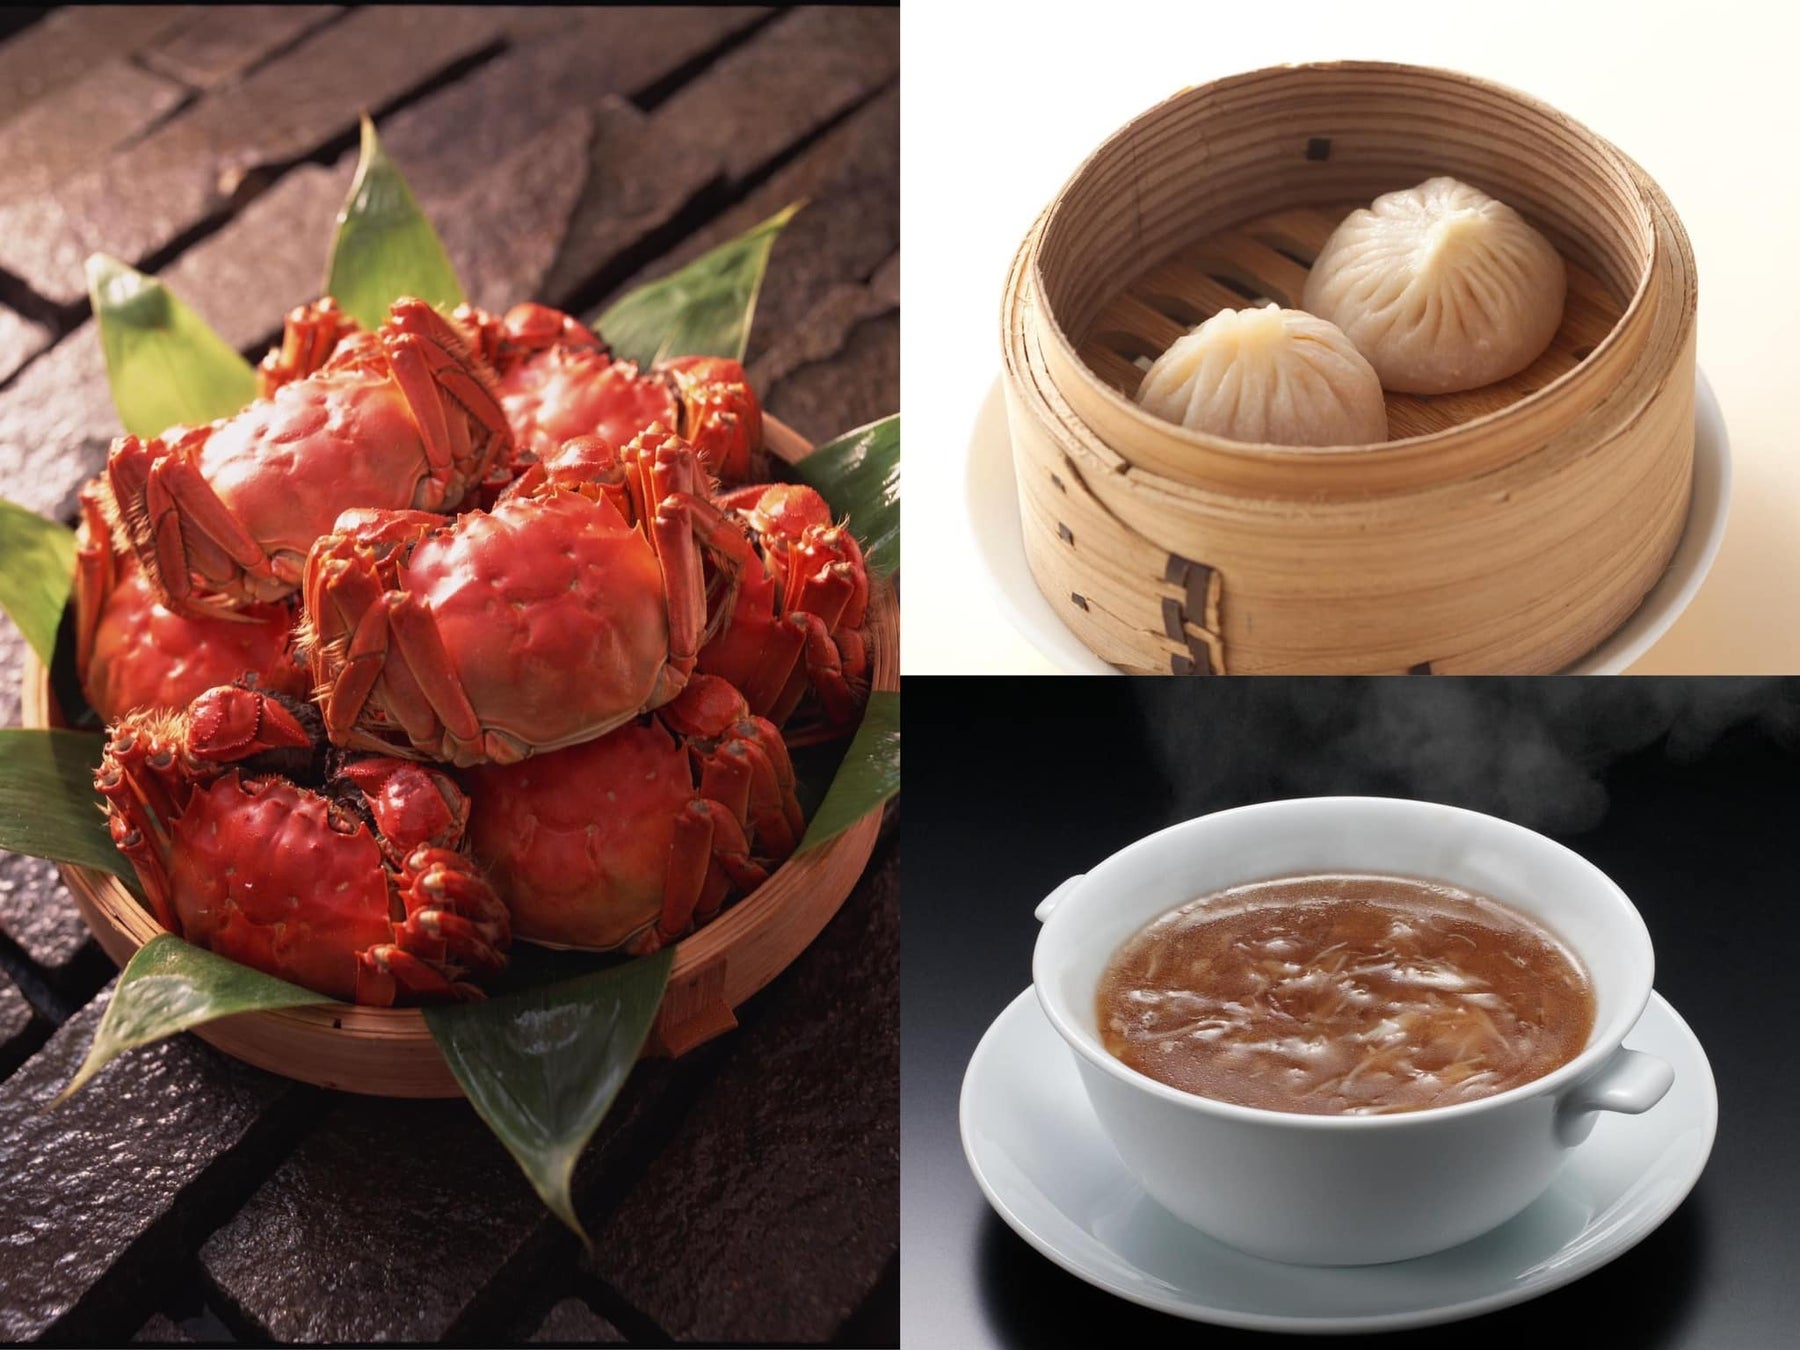 王道と贅沢のハサミ撃ち！ベストシーズン到来の『上海蟹』を食べつくす「絶品蟹コース」をお見逃しなく！